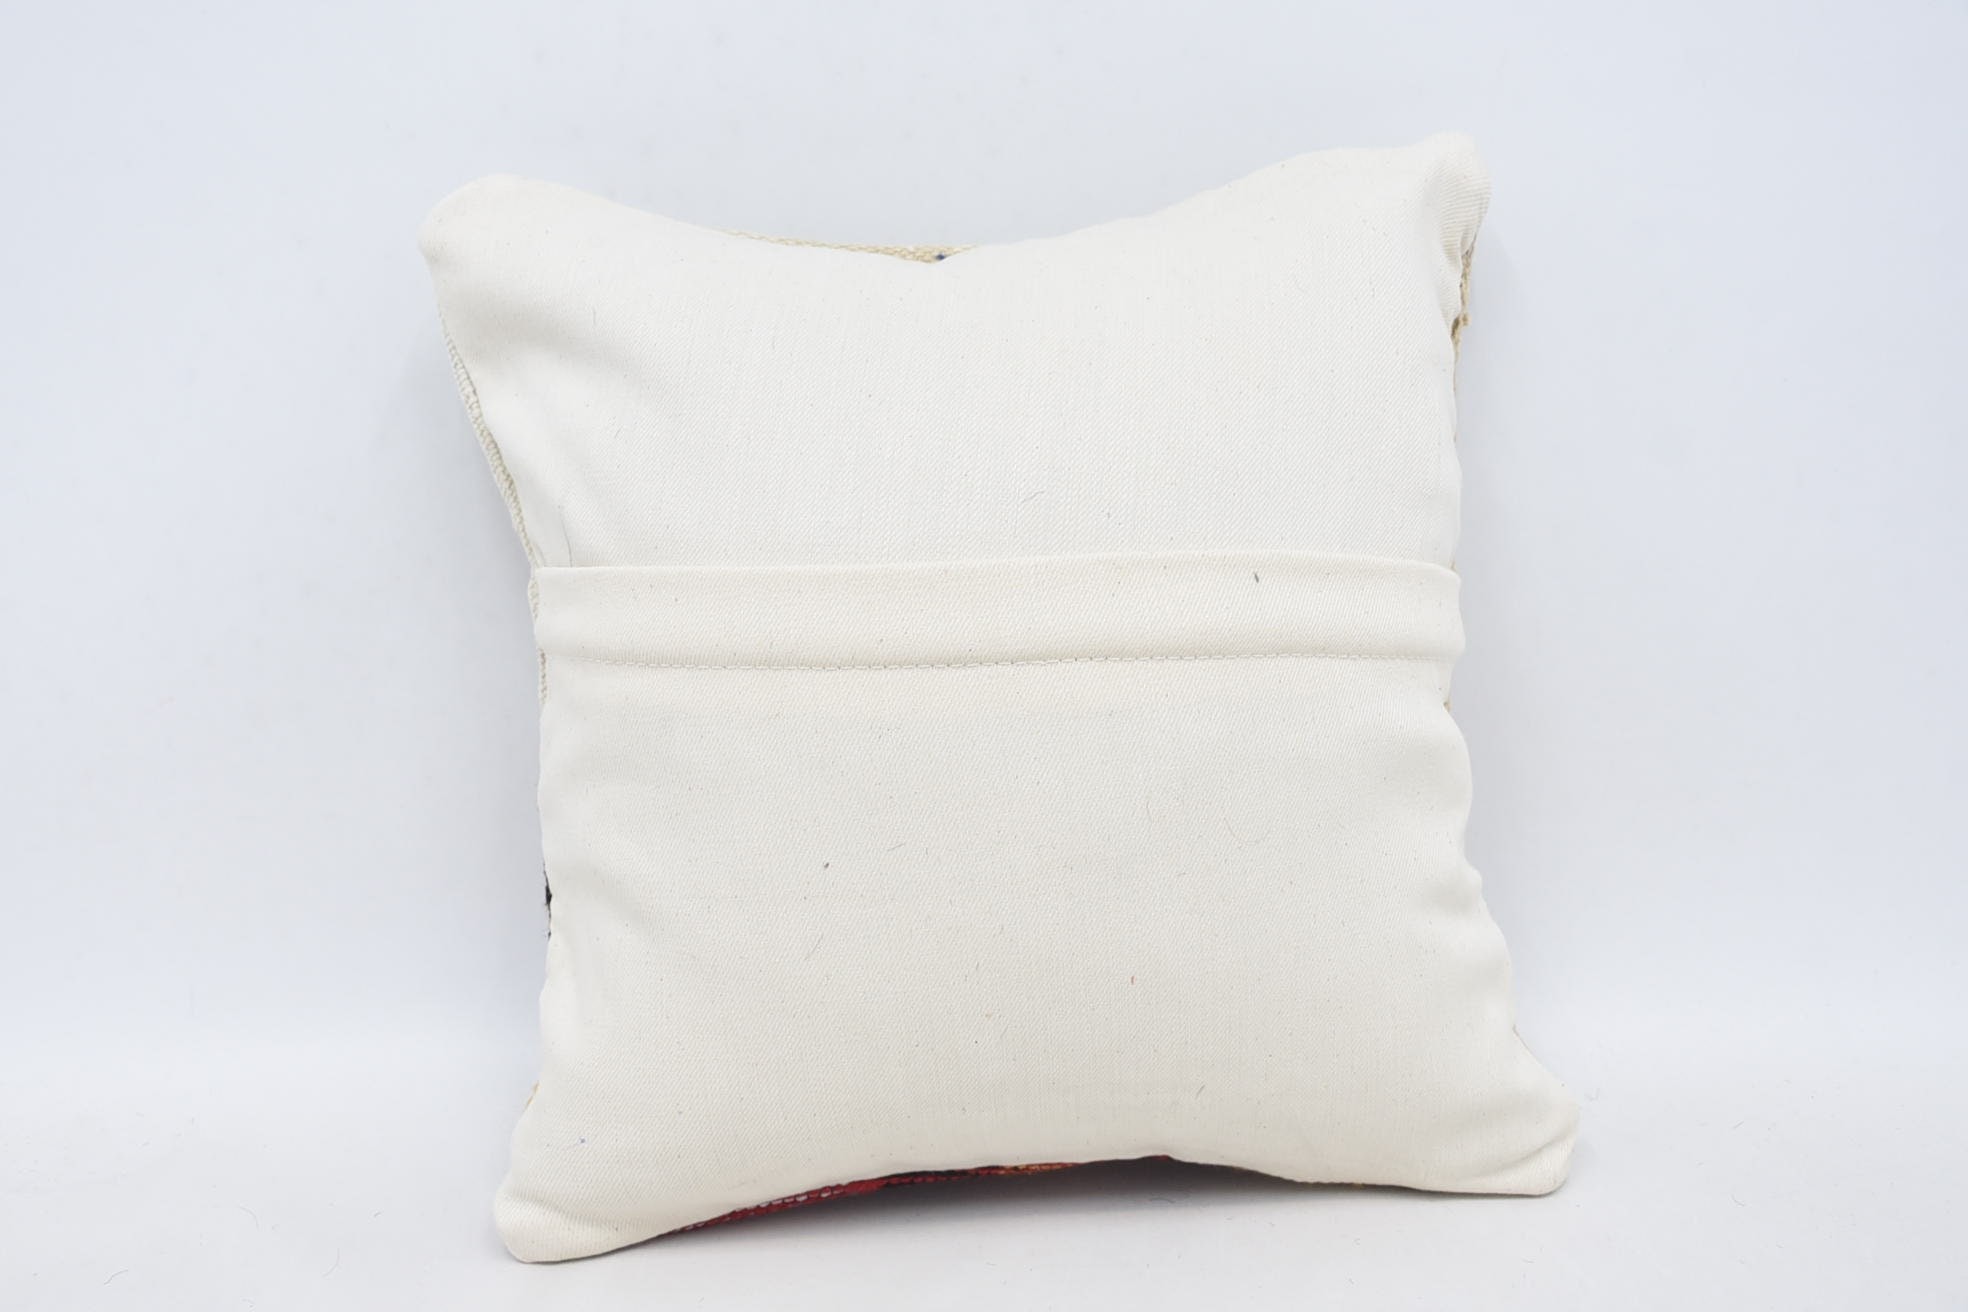 Office Chair Cushion Cover, Kilim Pillow, Kilim Pillow Cover, 14"x14" White Pillow Cover, Bolster Throw Pillow Sham, Throw Kilim Pillow